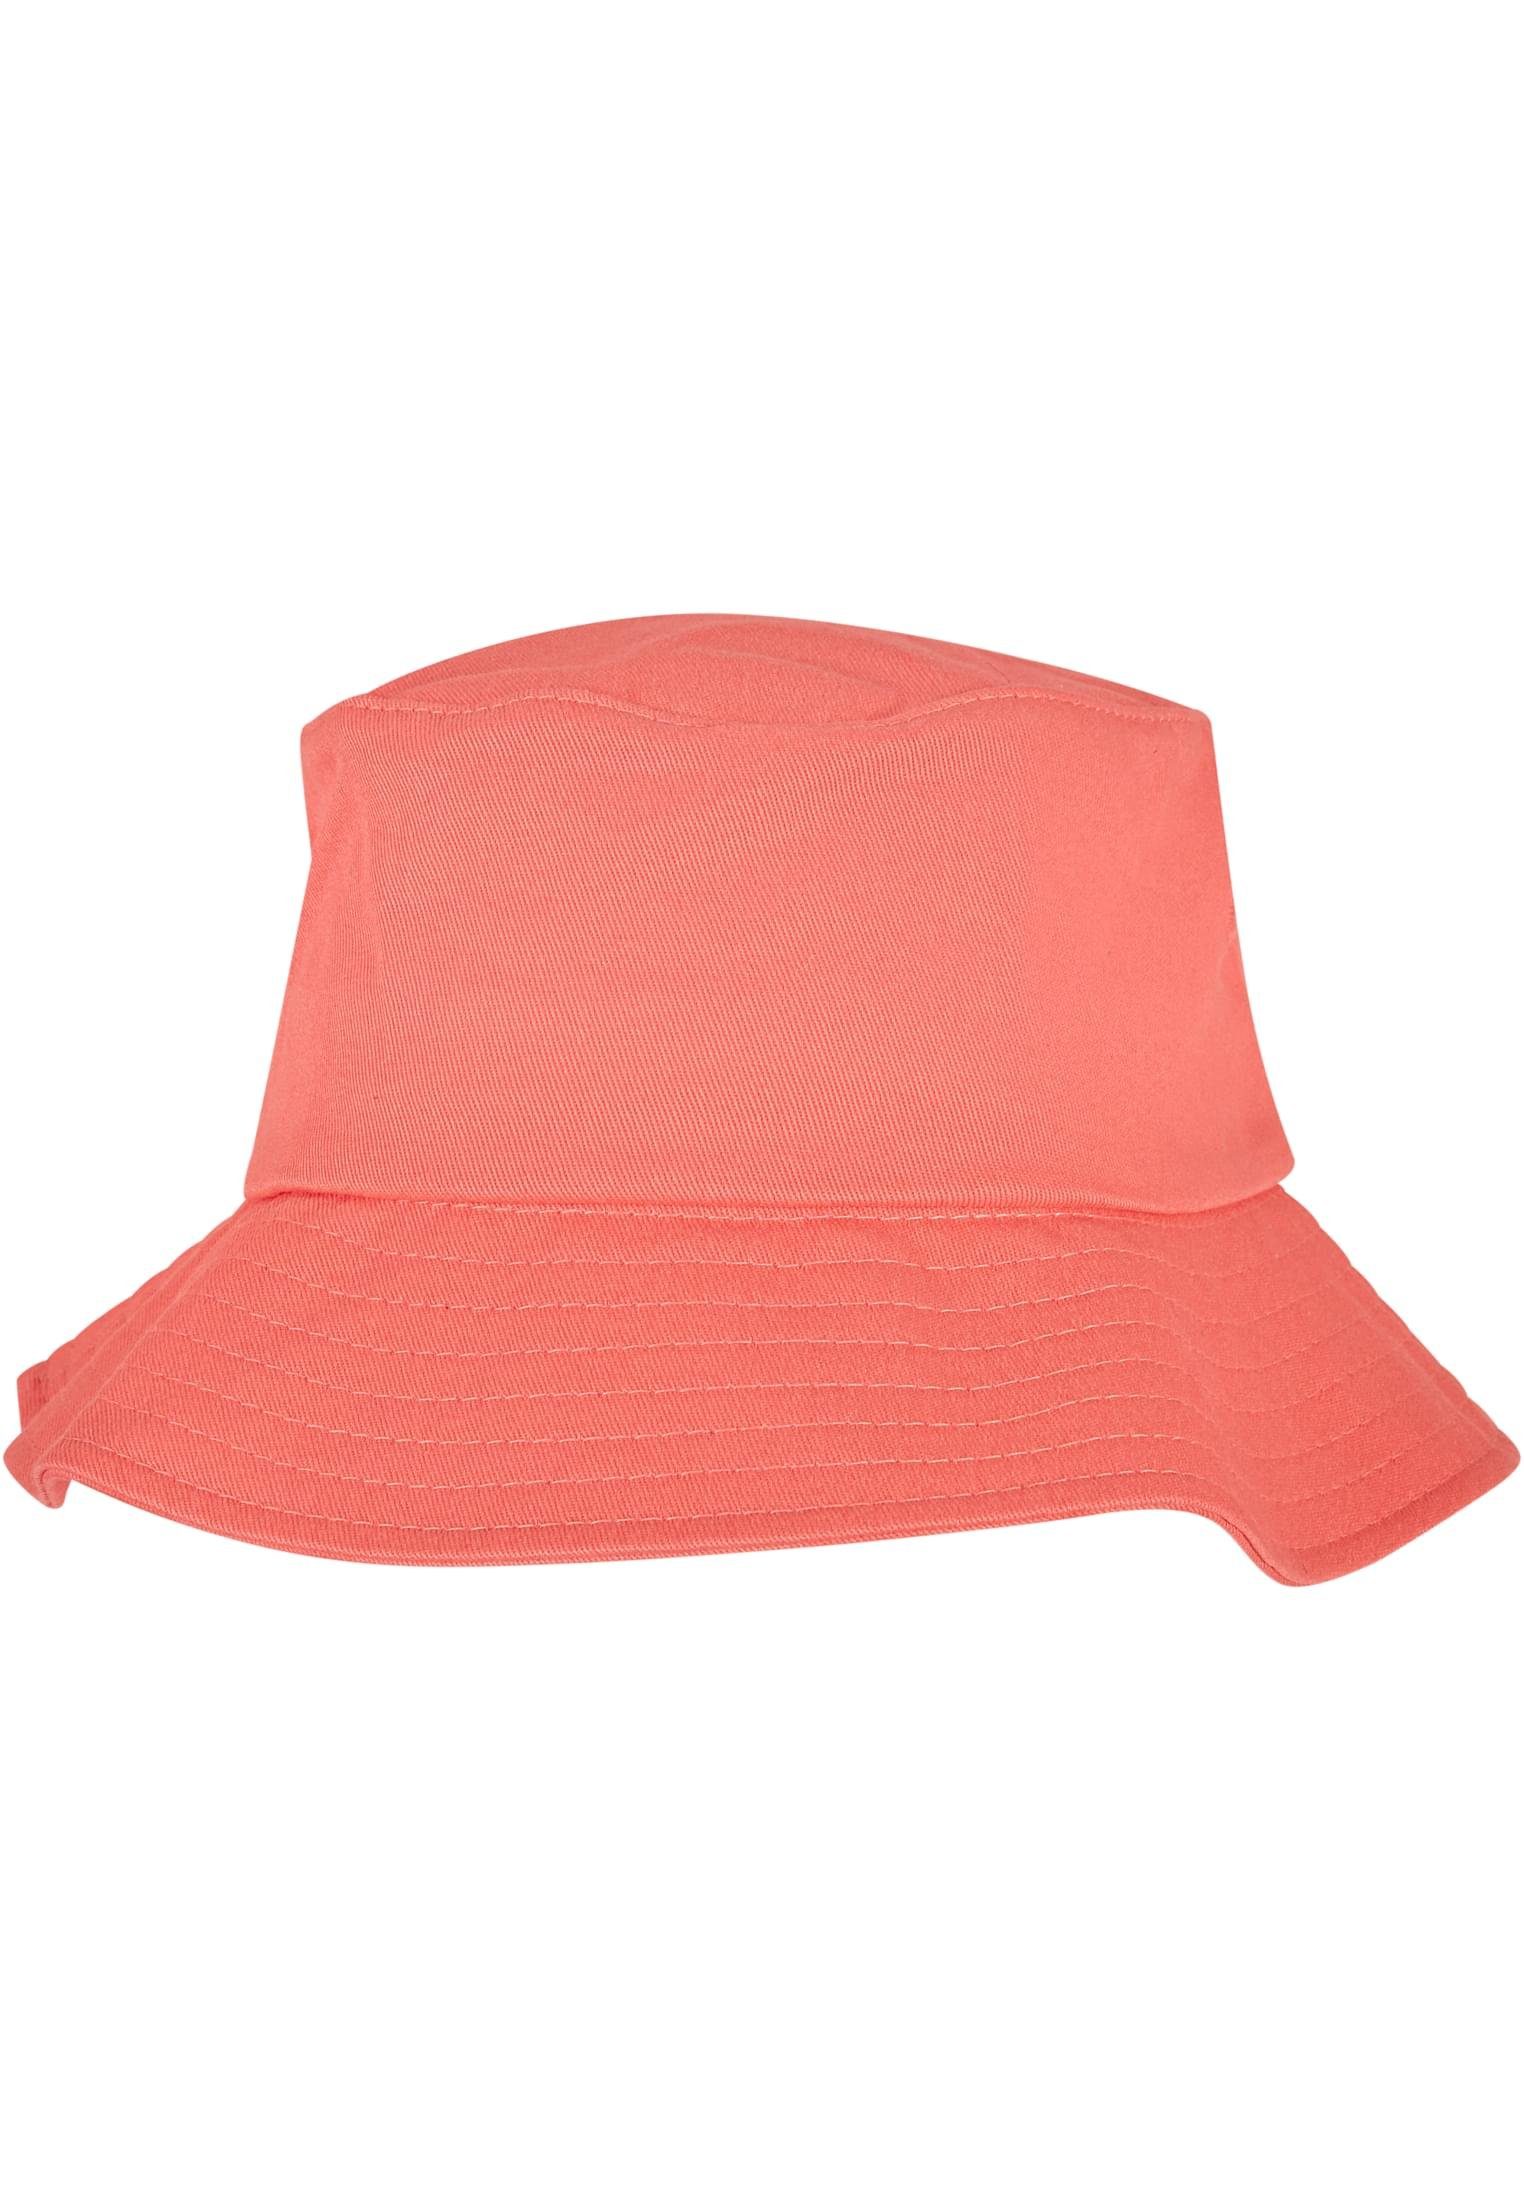 Flexfit Krone für Tragekomfort Accessoires Hat, Flexfit Elastangewebte Cotton Bucket Twill komfortablen Cap Flex